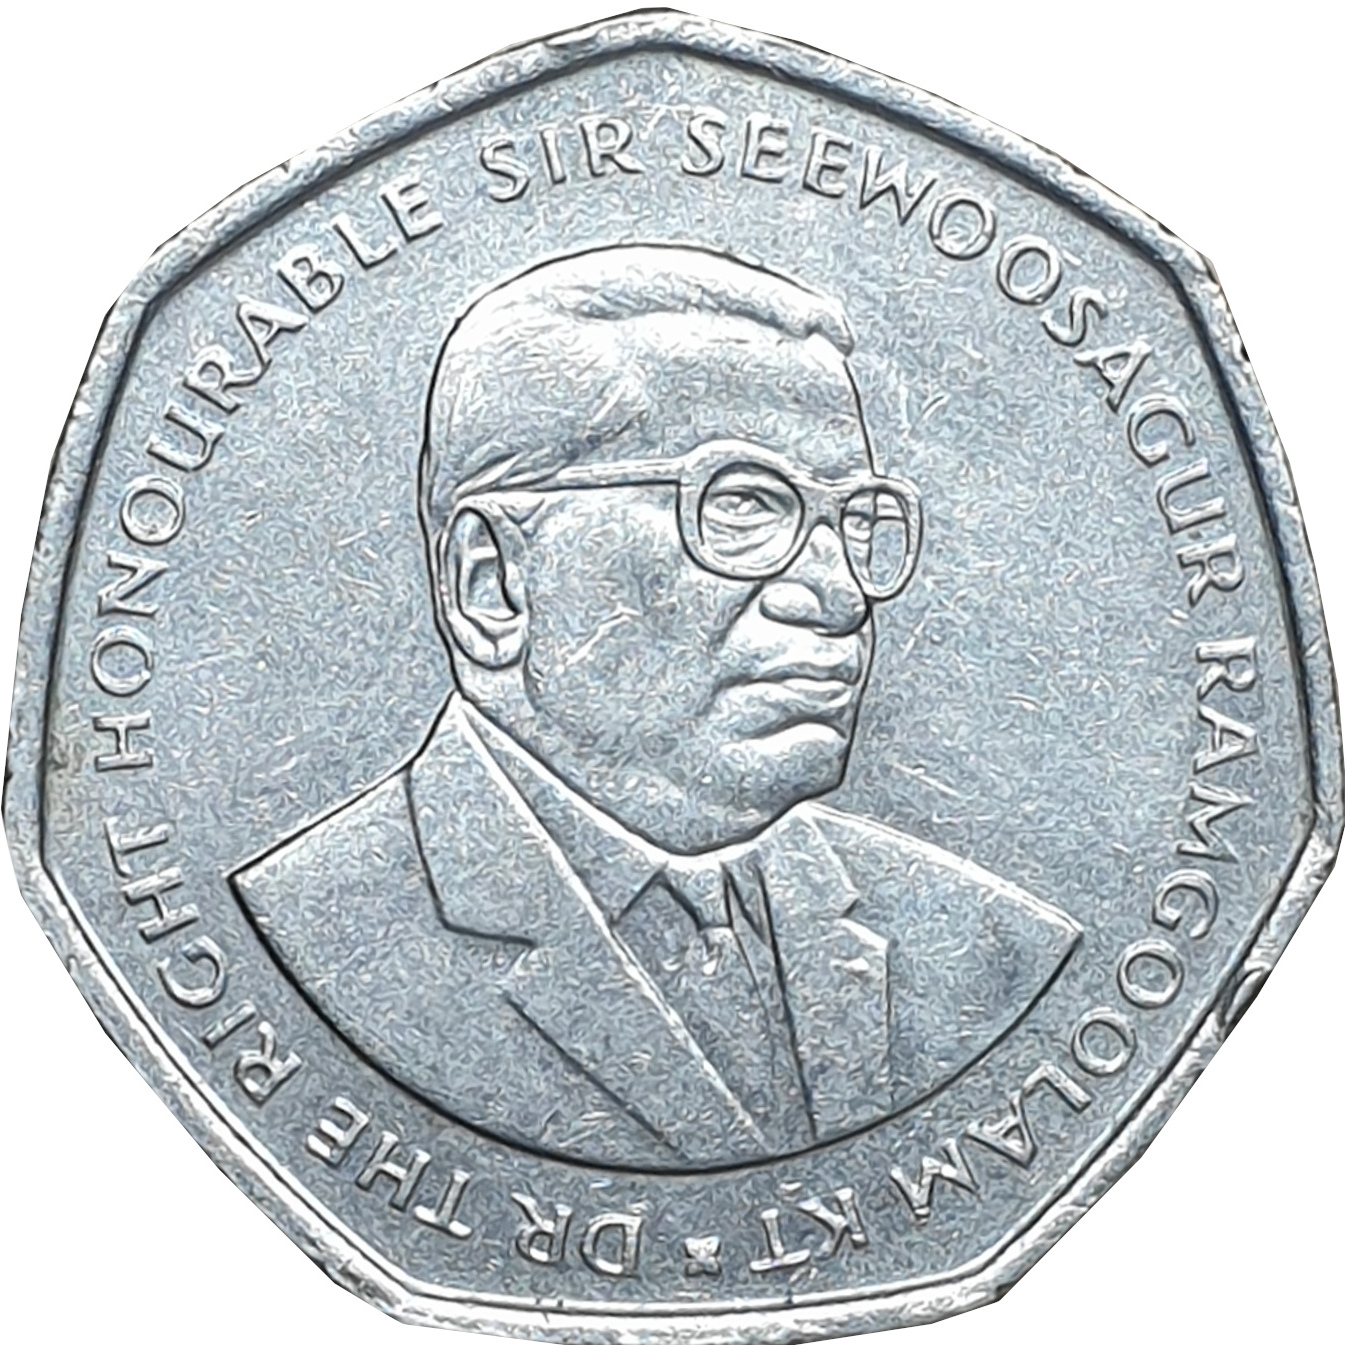 10 rupees - Sir Seewoosagur Ramgoolam